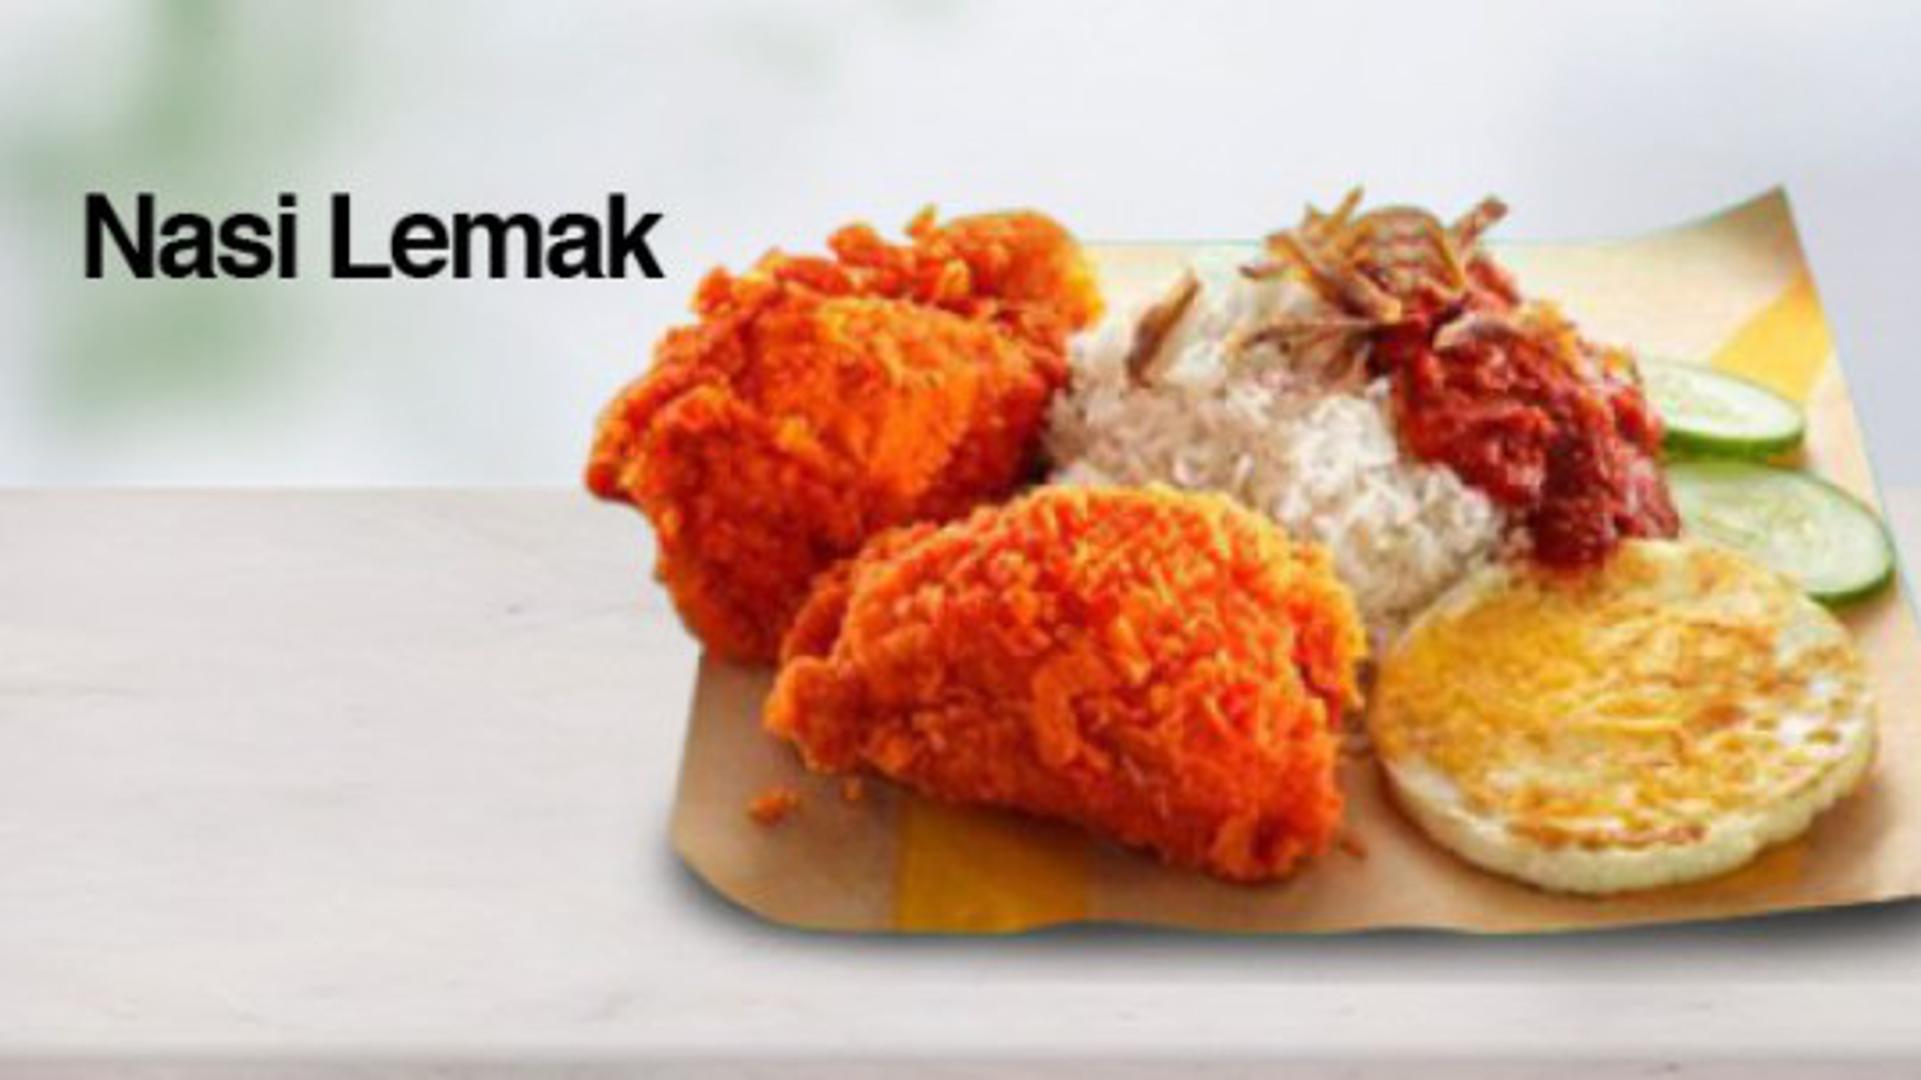 Specifično za Maleziju, kod njih možete probati 'Nasi Lemak', odnosno platu na kojoj se nalazi  riža s kokosom, inćuni, krastavac, jaje na oko i piletina pohana s raznim začinima.